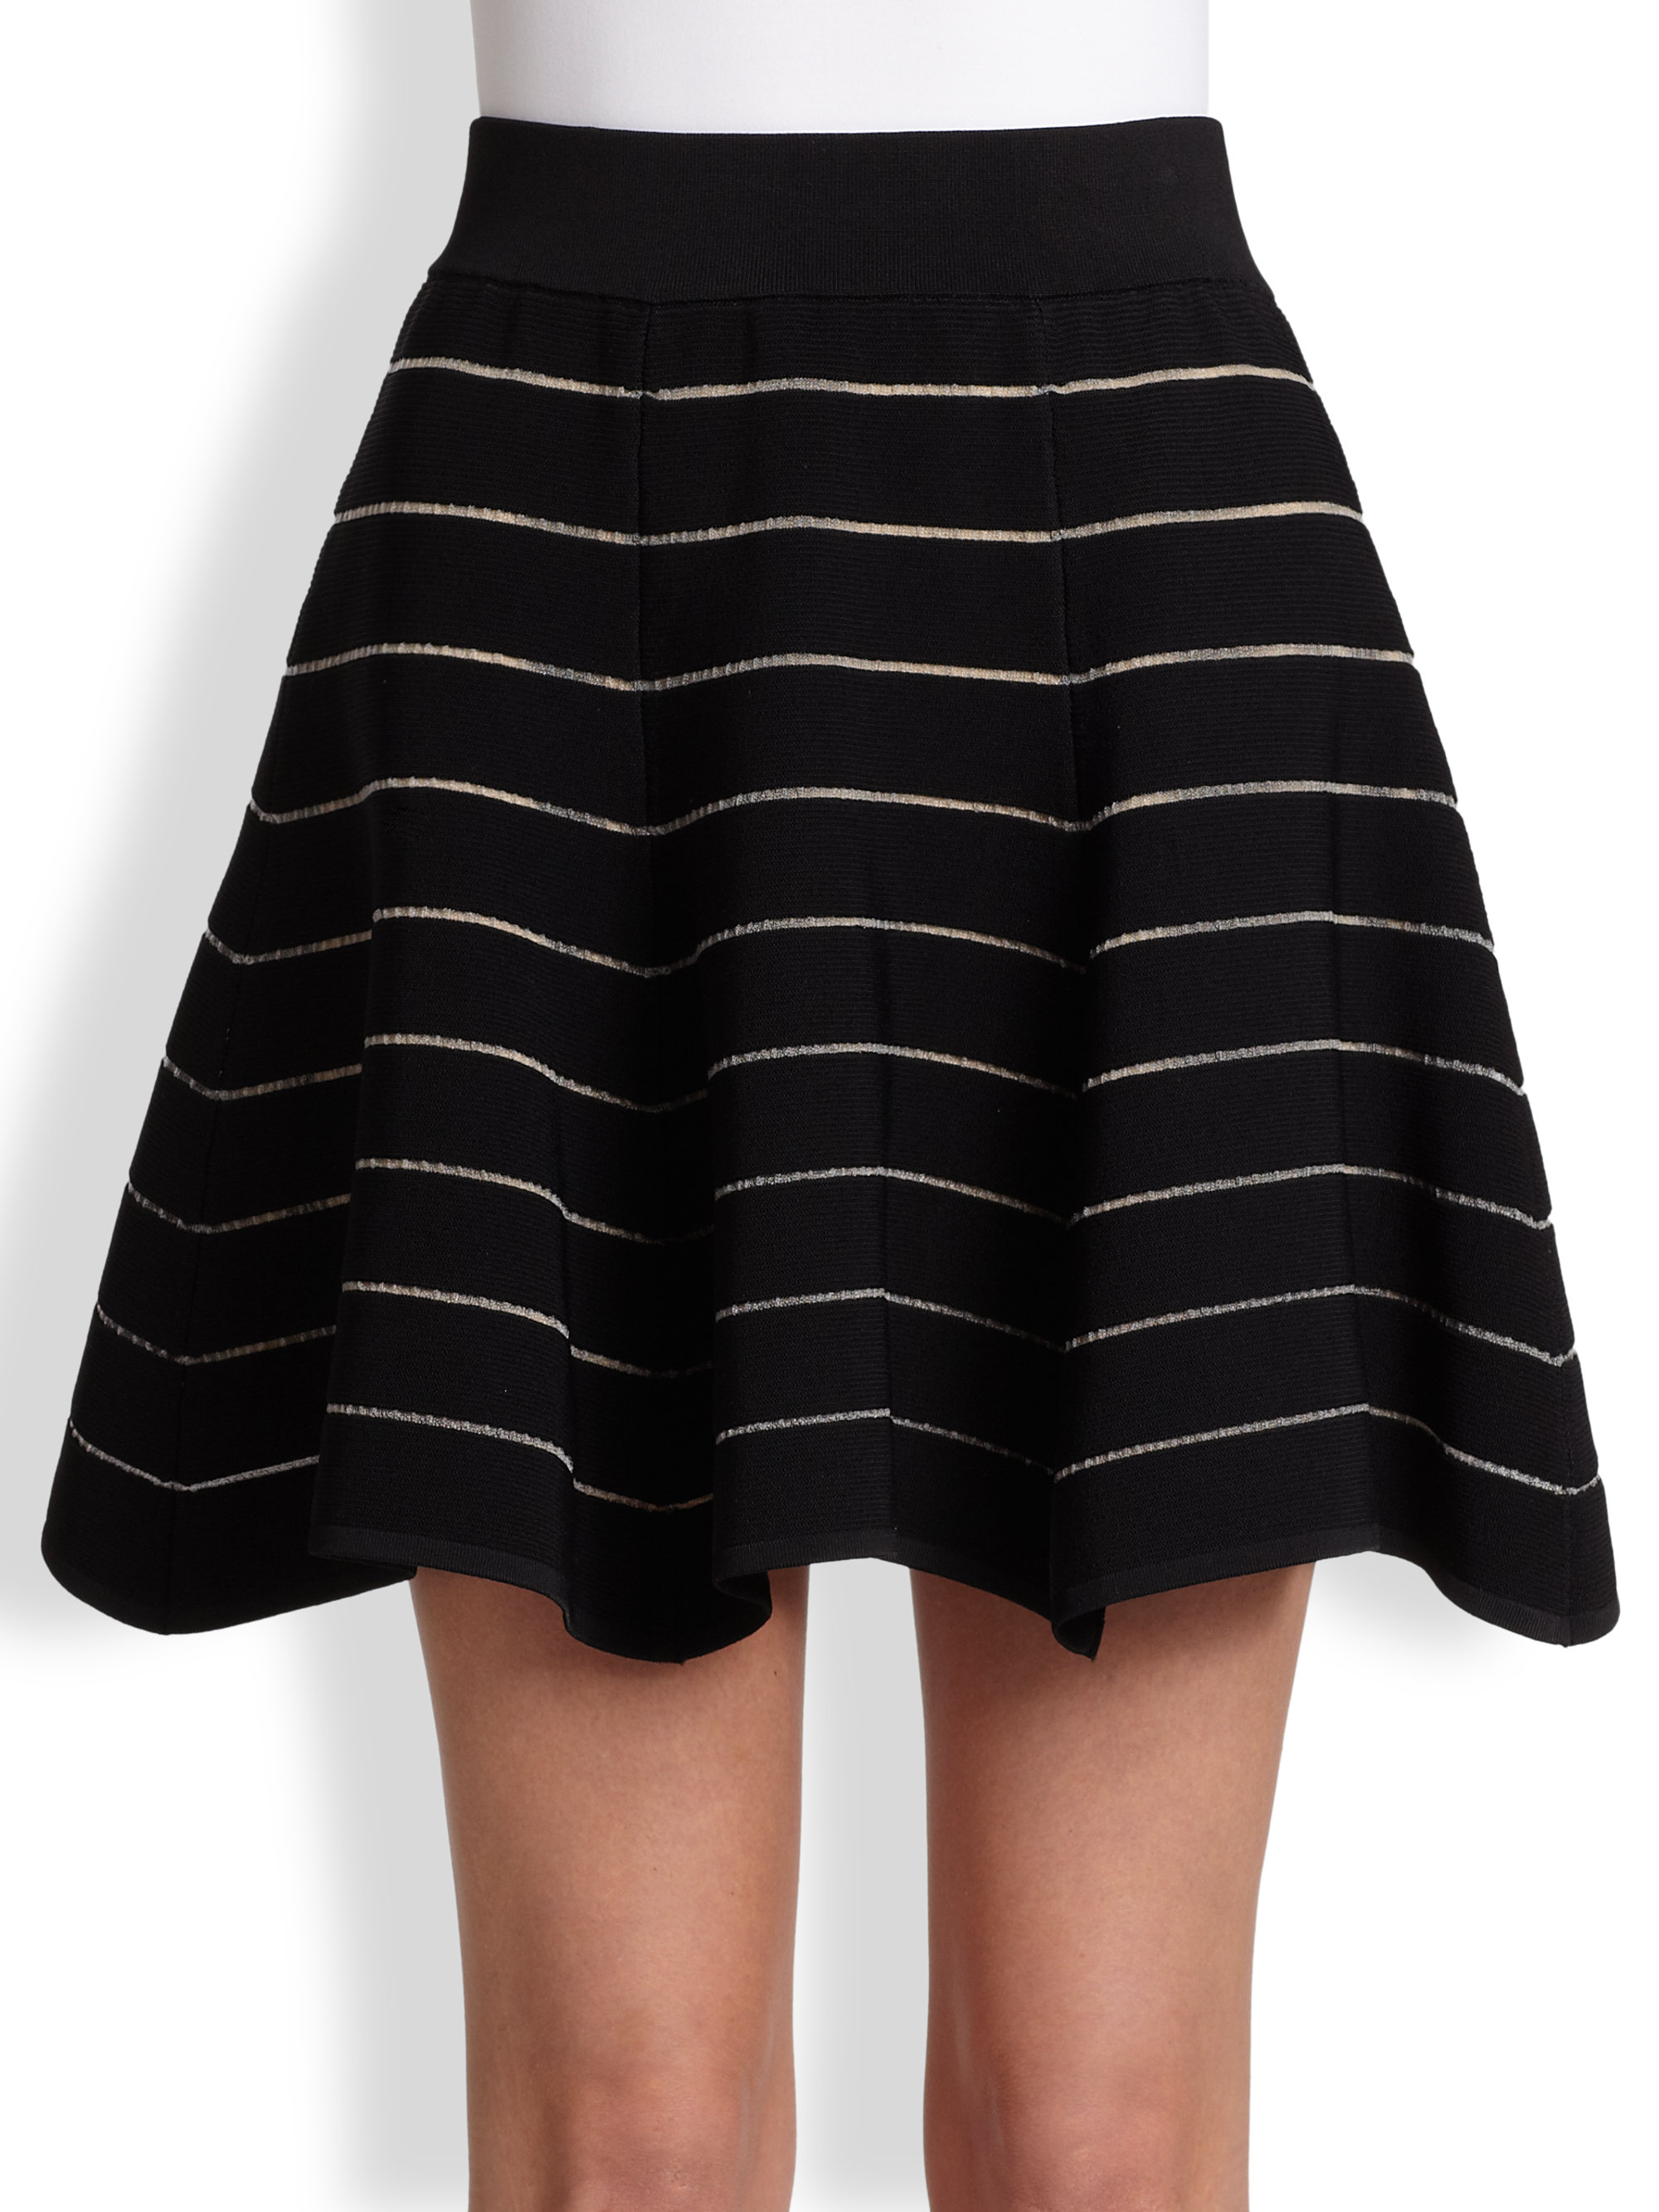 Lyst - Torn by ronny kobo Berenice Sheer Striped Flared Skirt in Black